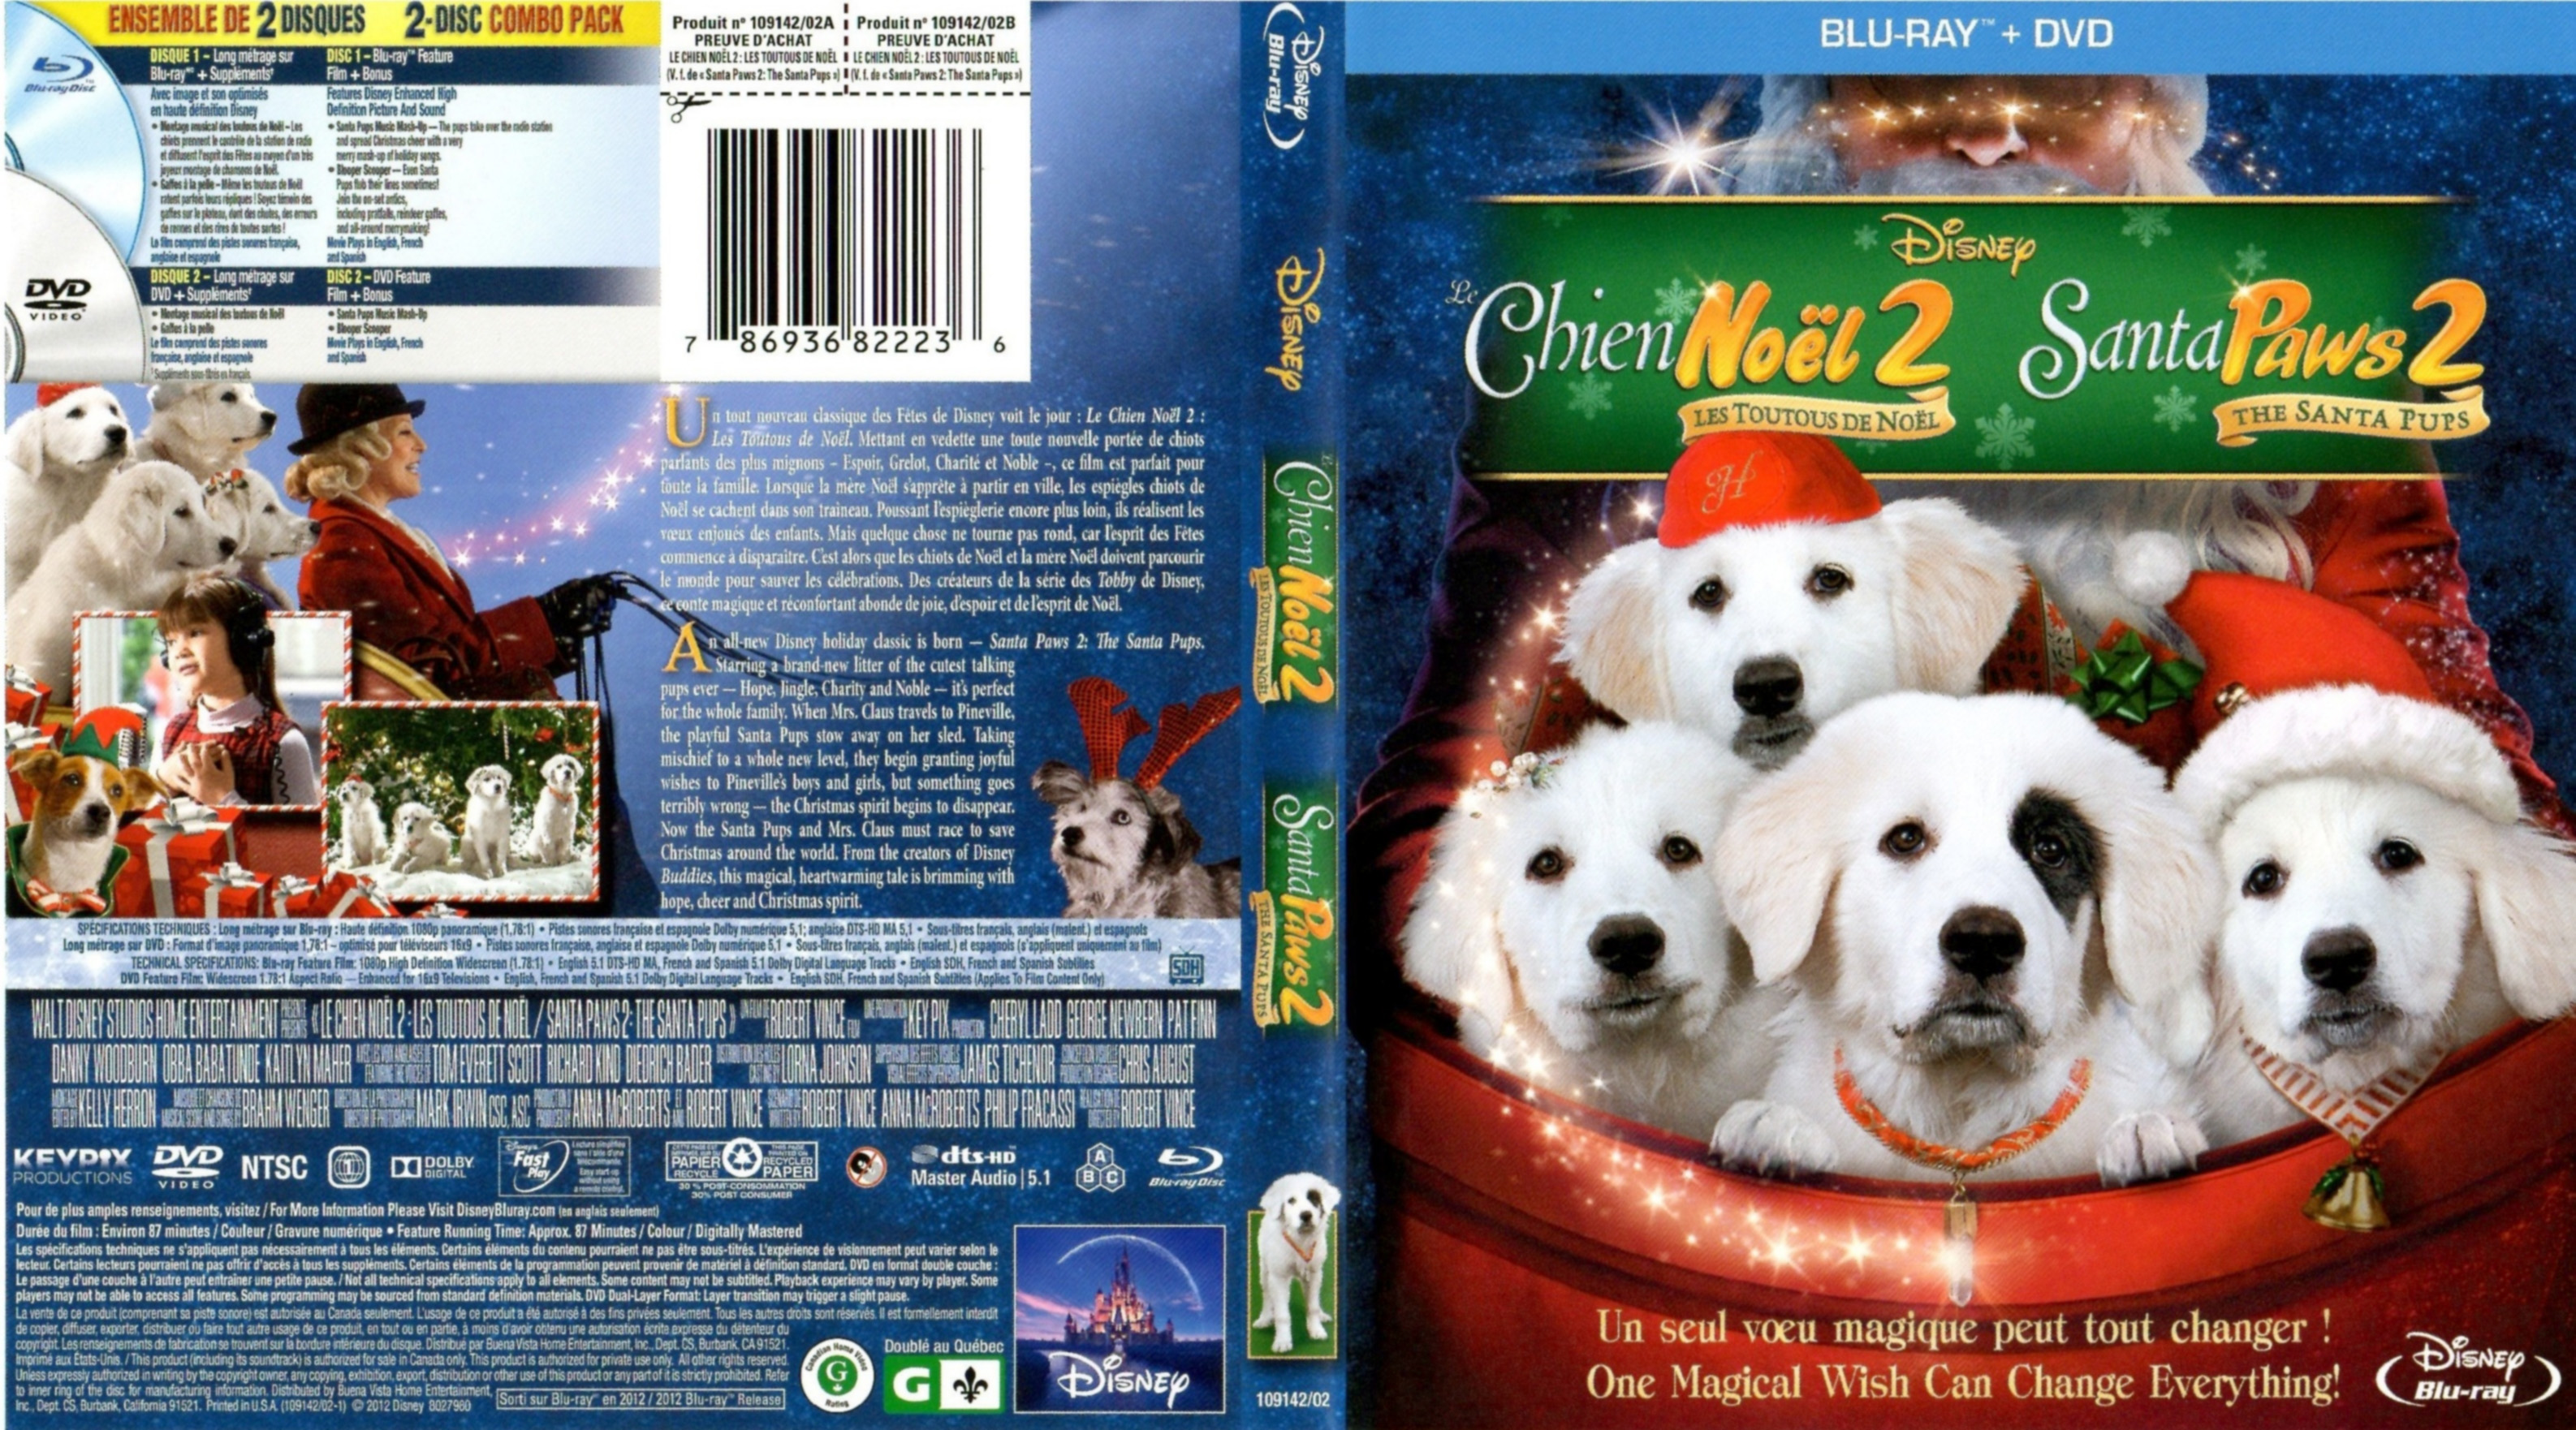 Jaquette Dvd De Le Chien Noël 2 Santa Paws 2 Canadienne Blu Ray